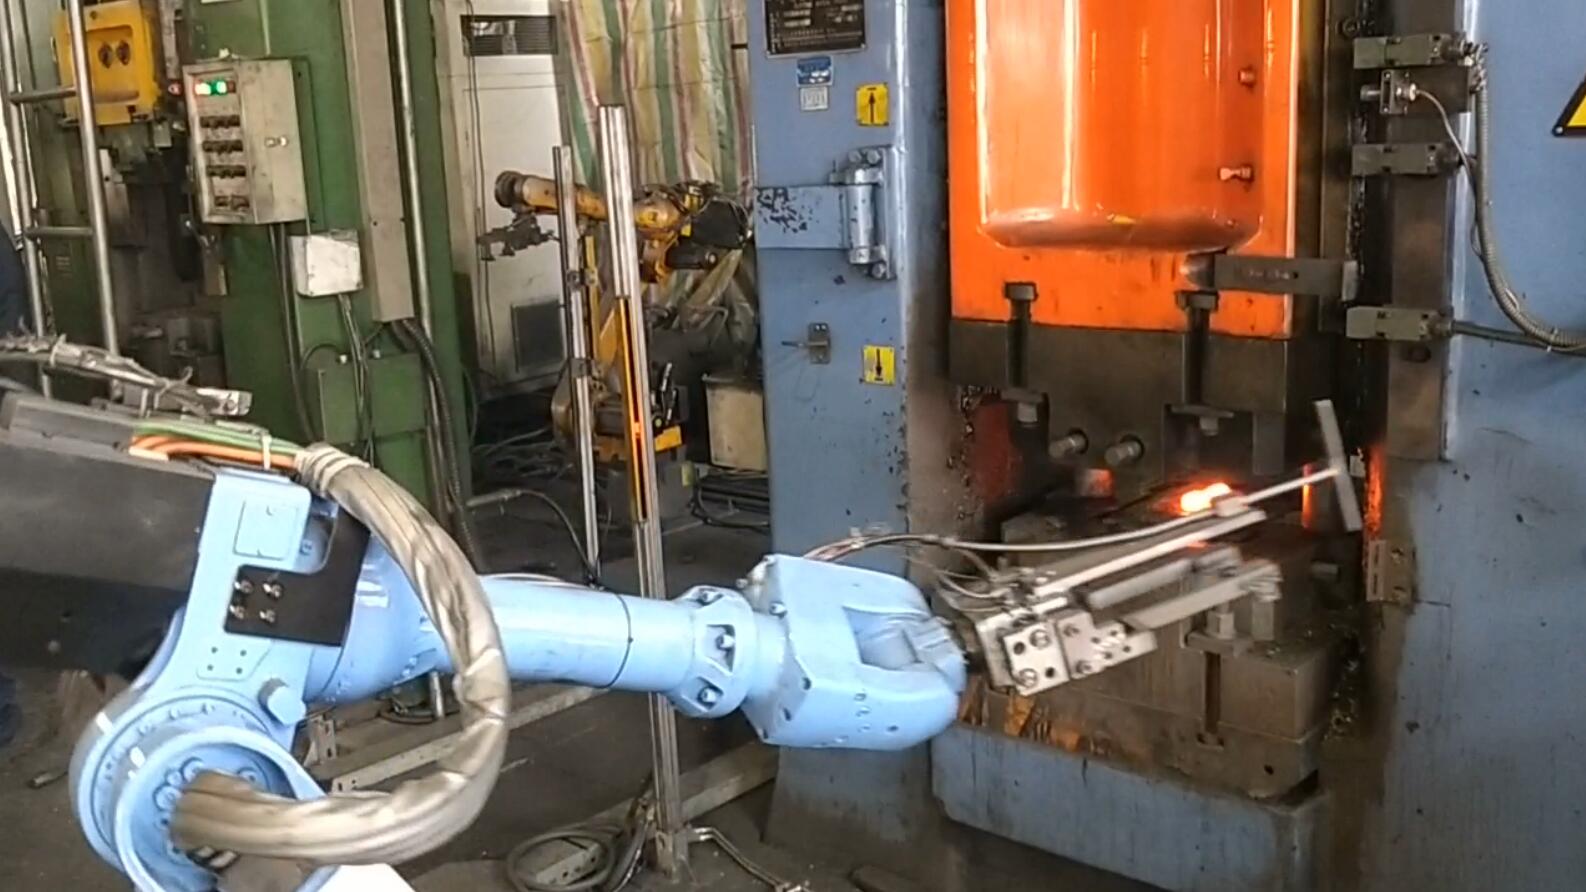 上下料工业机器人在冲床工业生产中的实际应用